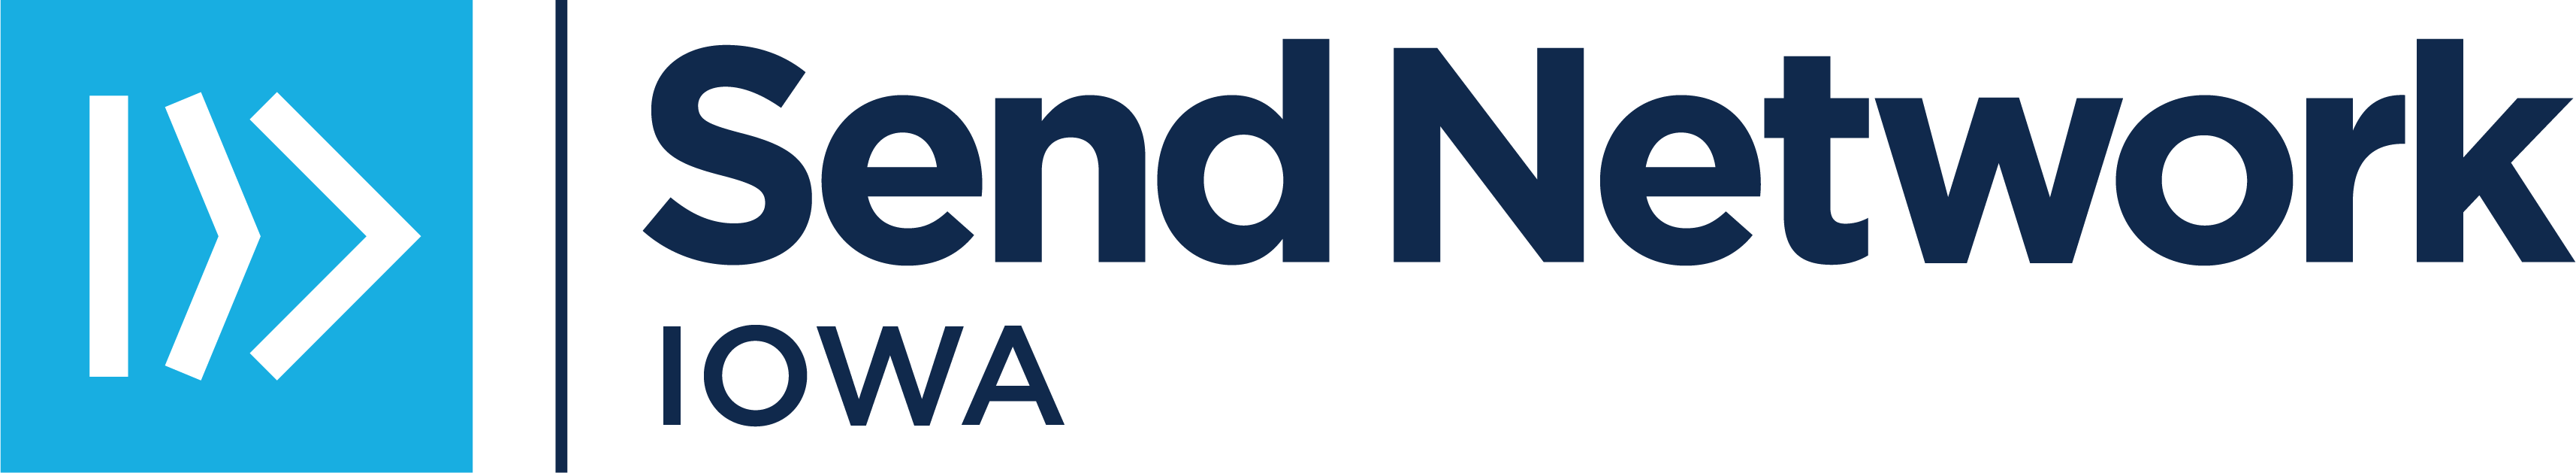 SN Iowa Logo_BlueNavy